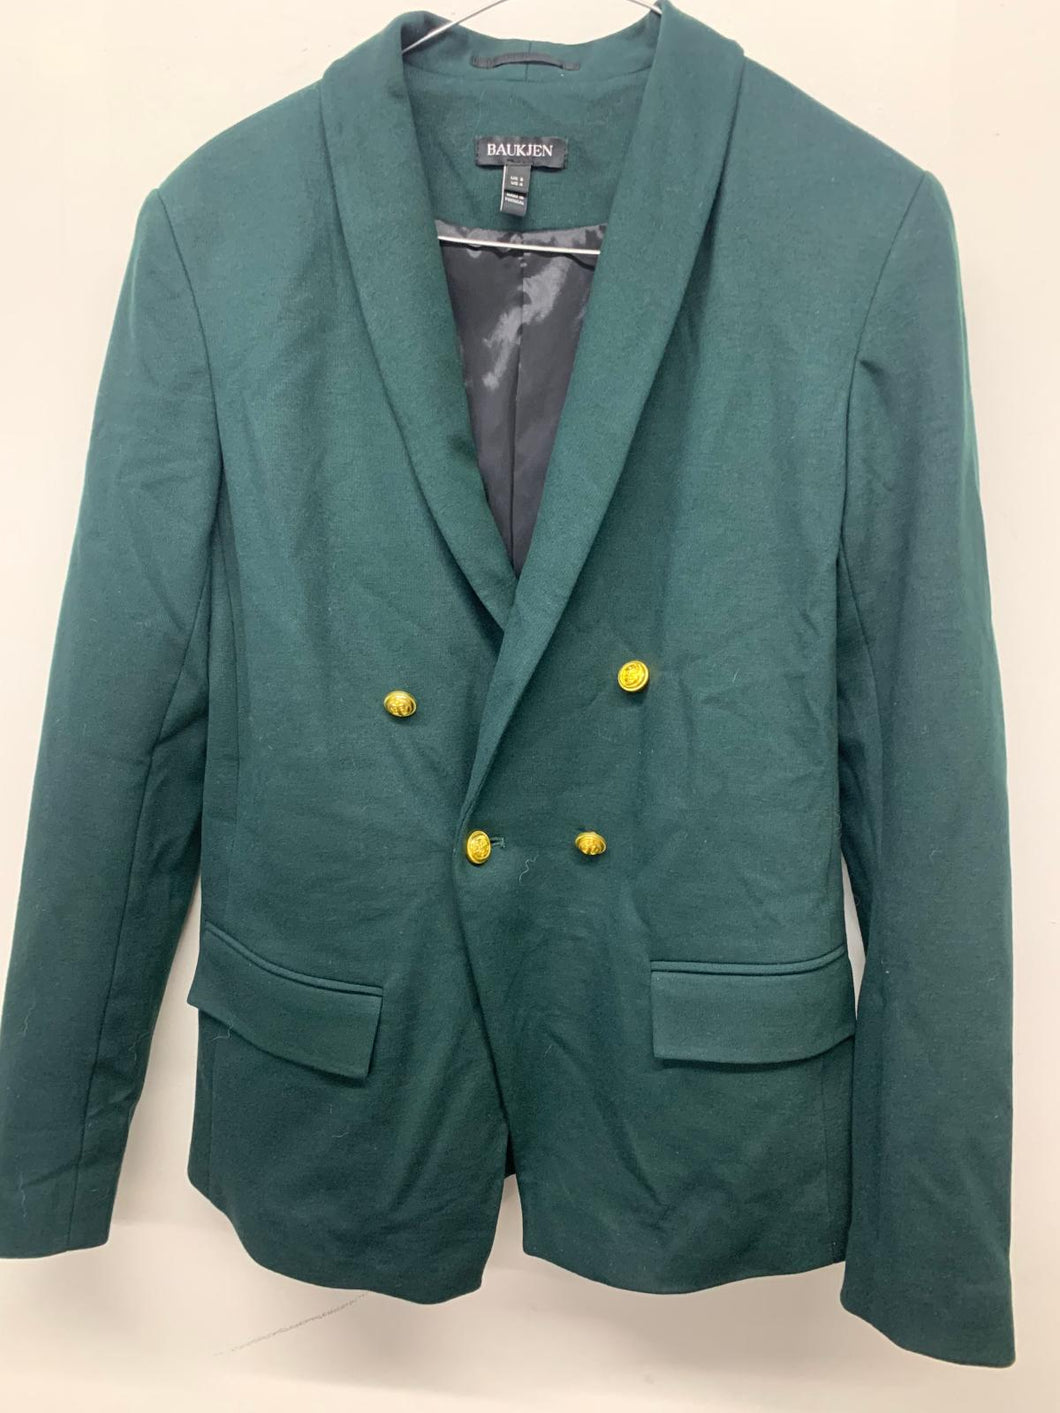 BAUKJEN Ladies Green Forest Long Sleeve Blazer Jacket Classic Double Breast UK8